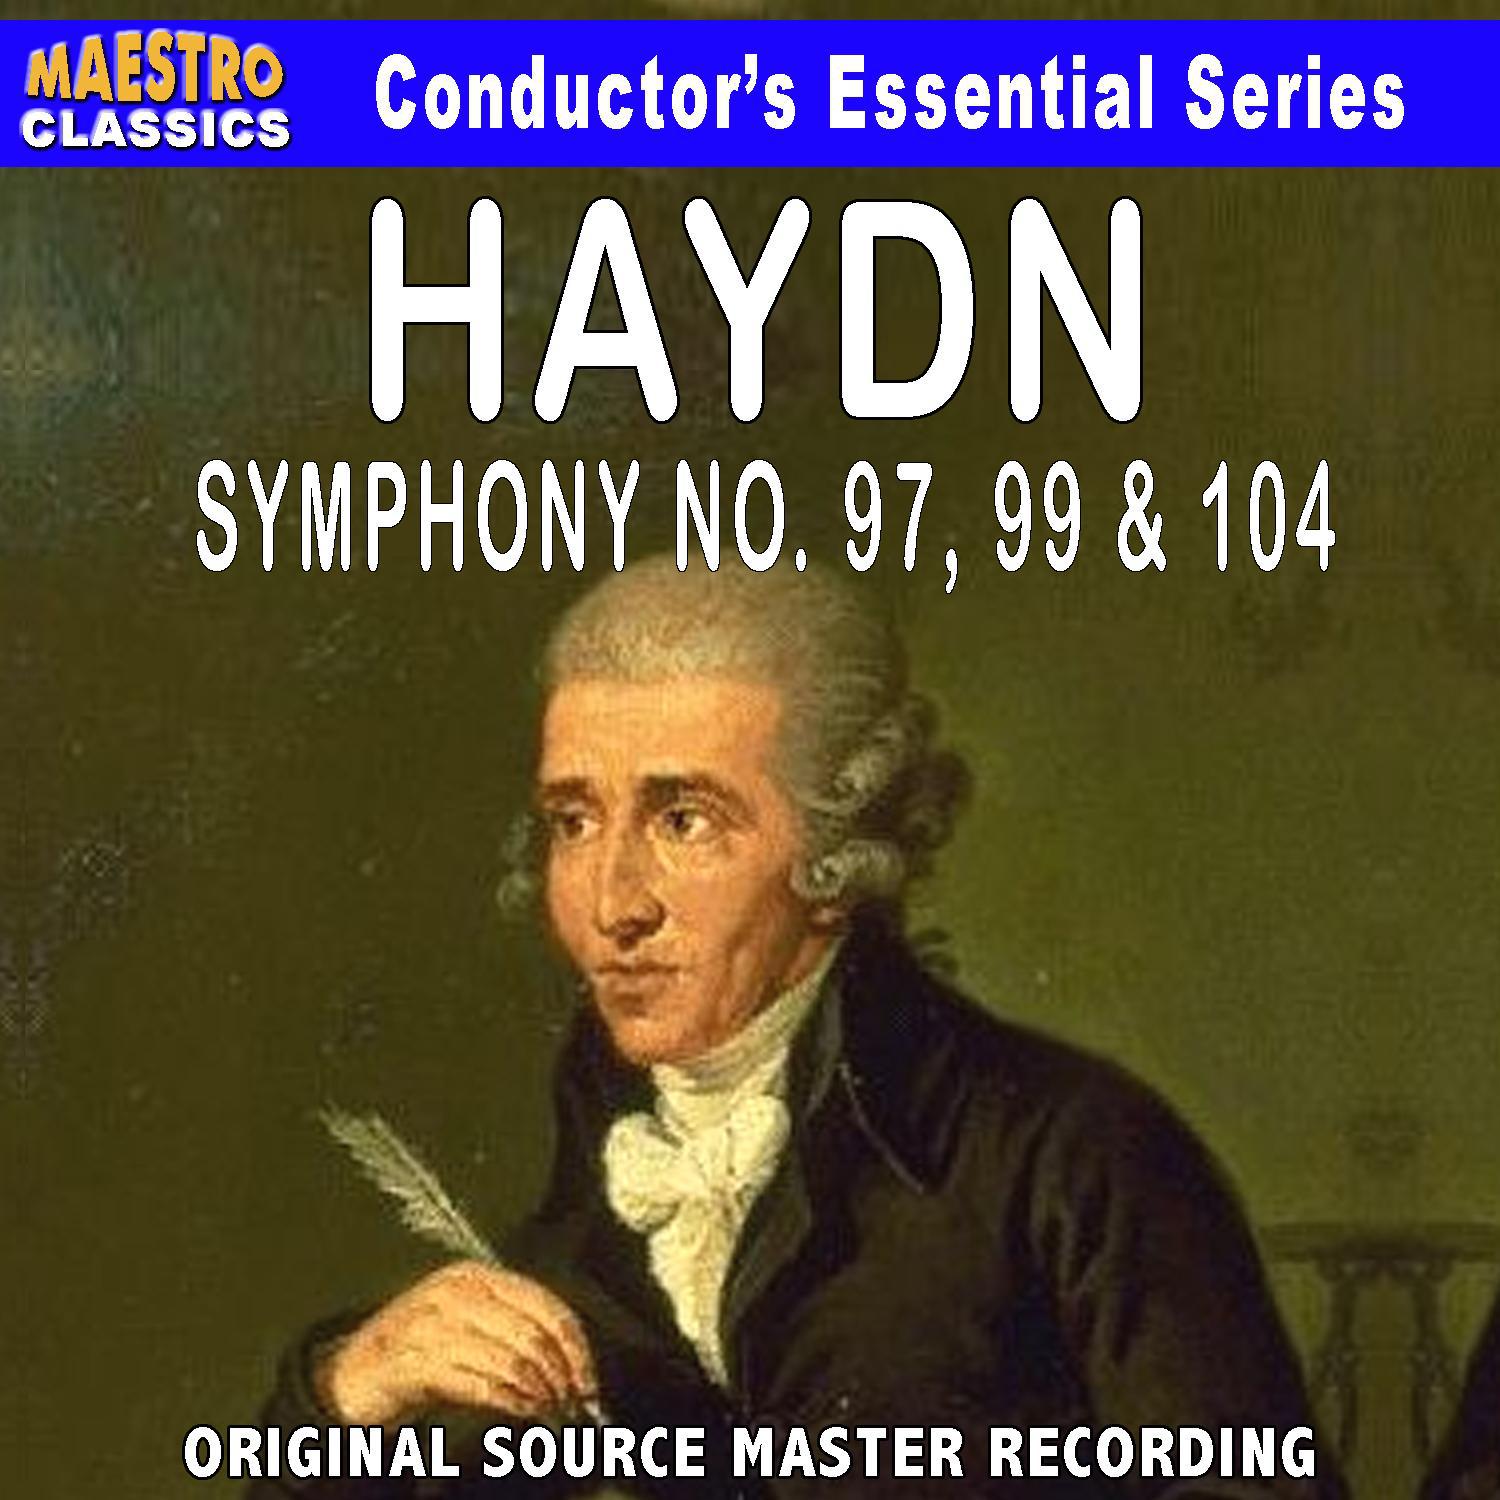 Haydn: Symphony No. 97, 99 & 104